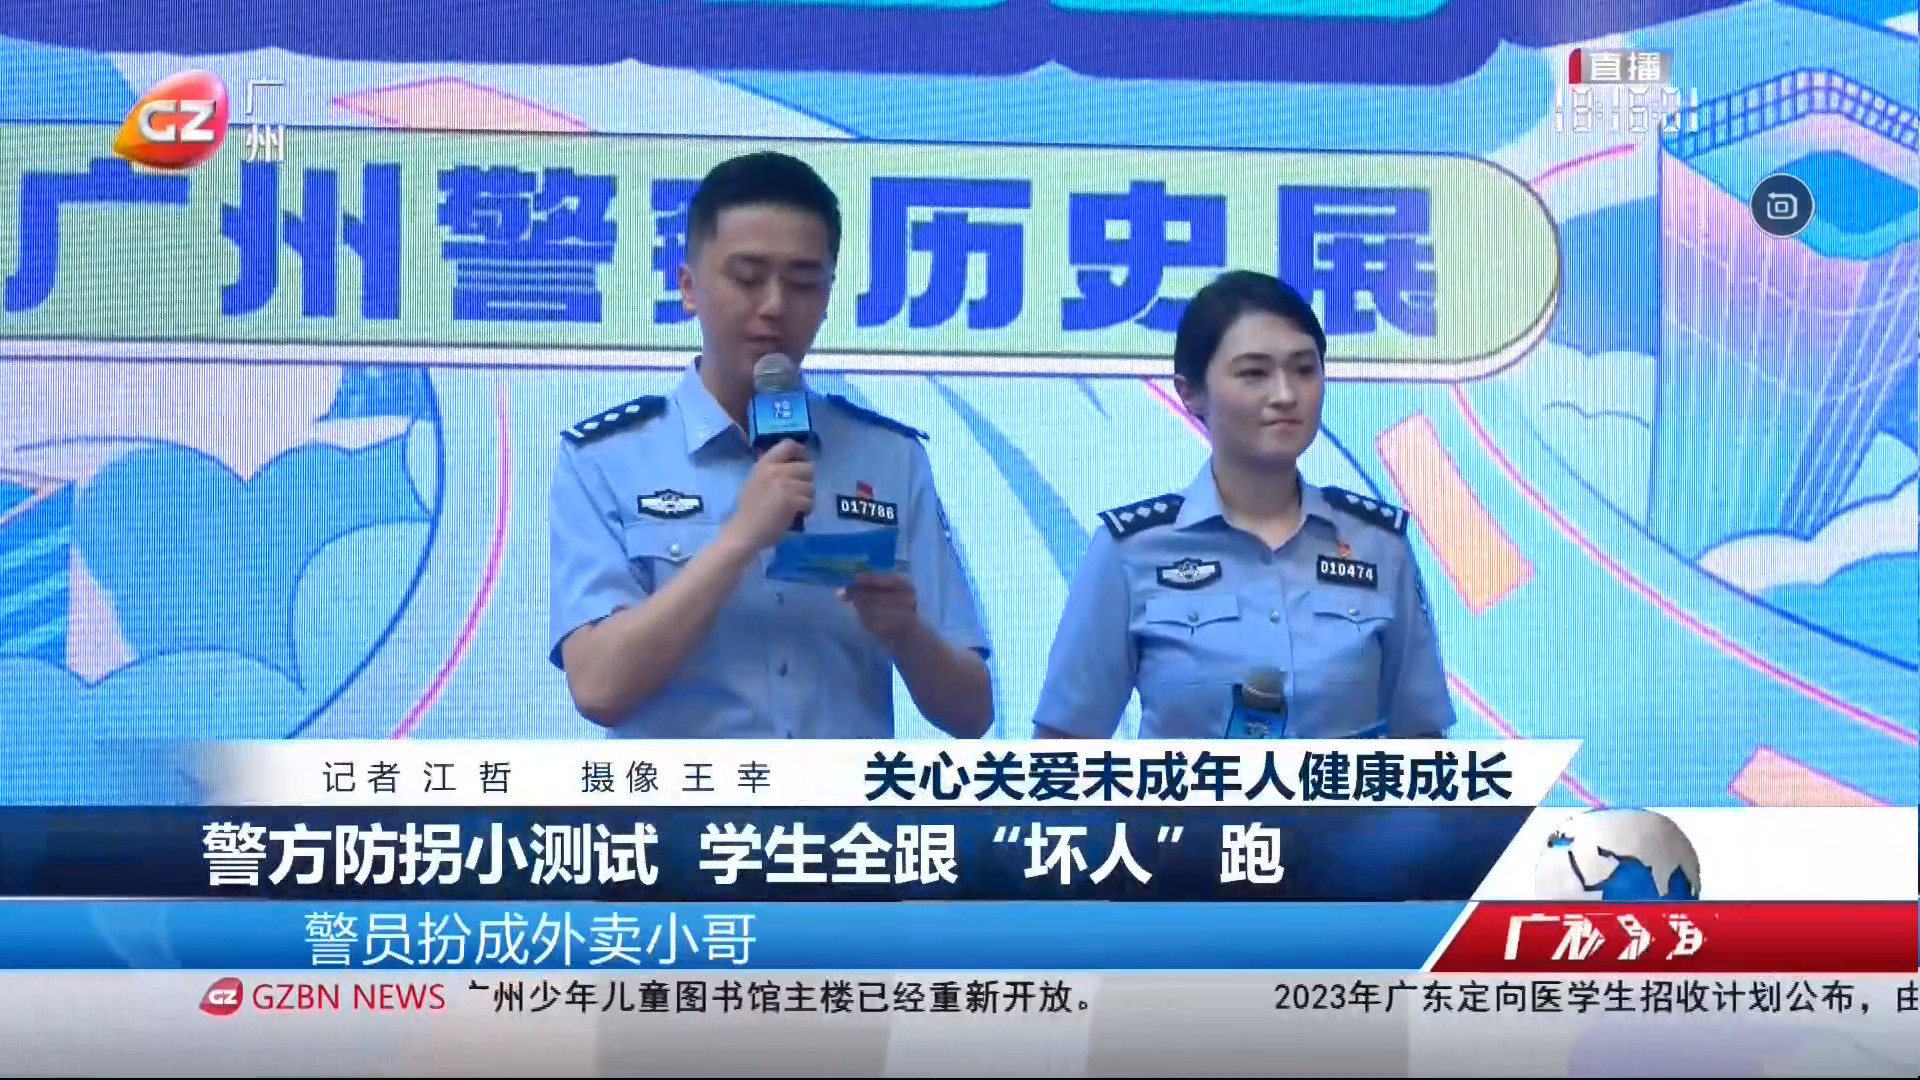 广州台综合频道 广视新闻 警方防拐小测试 学生全跟“坏人”跑